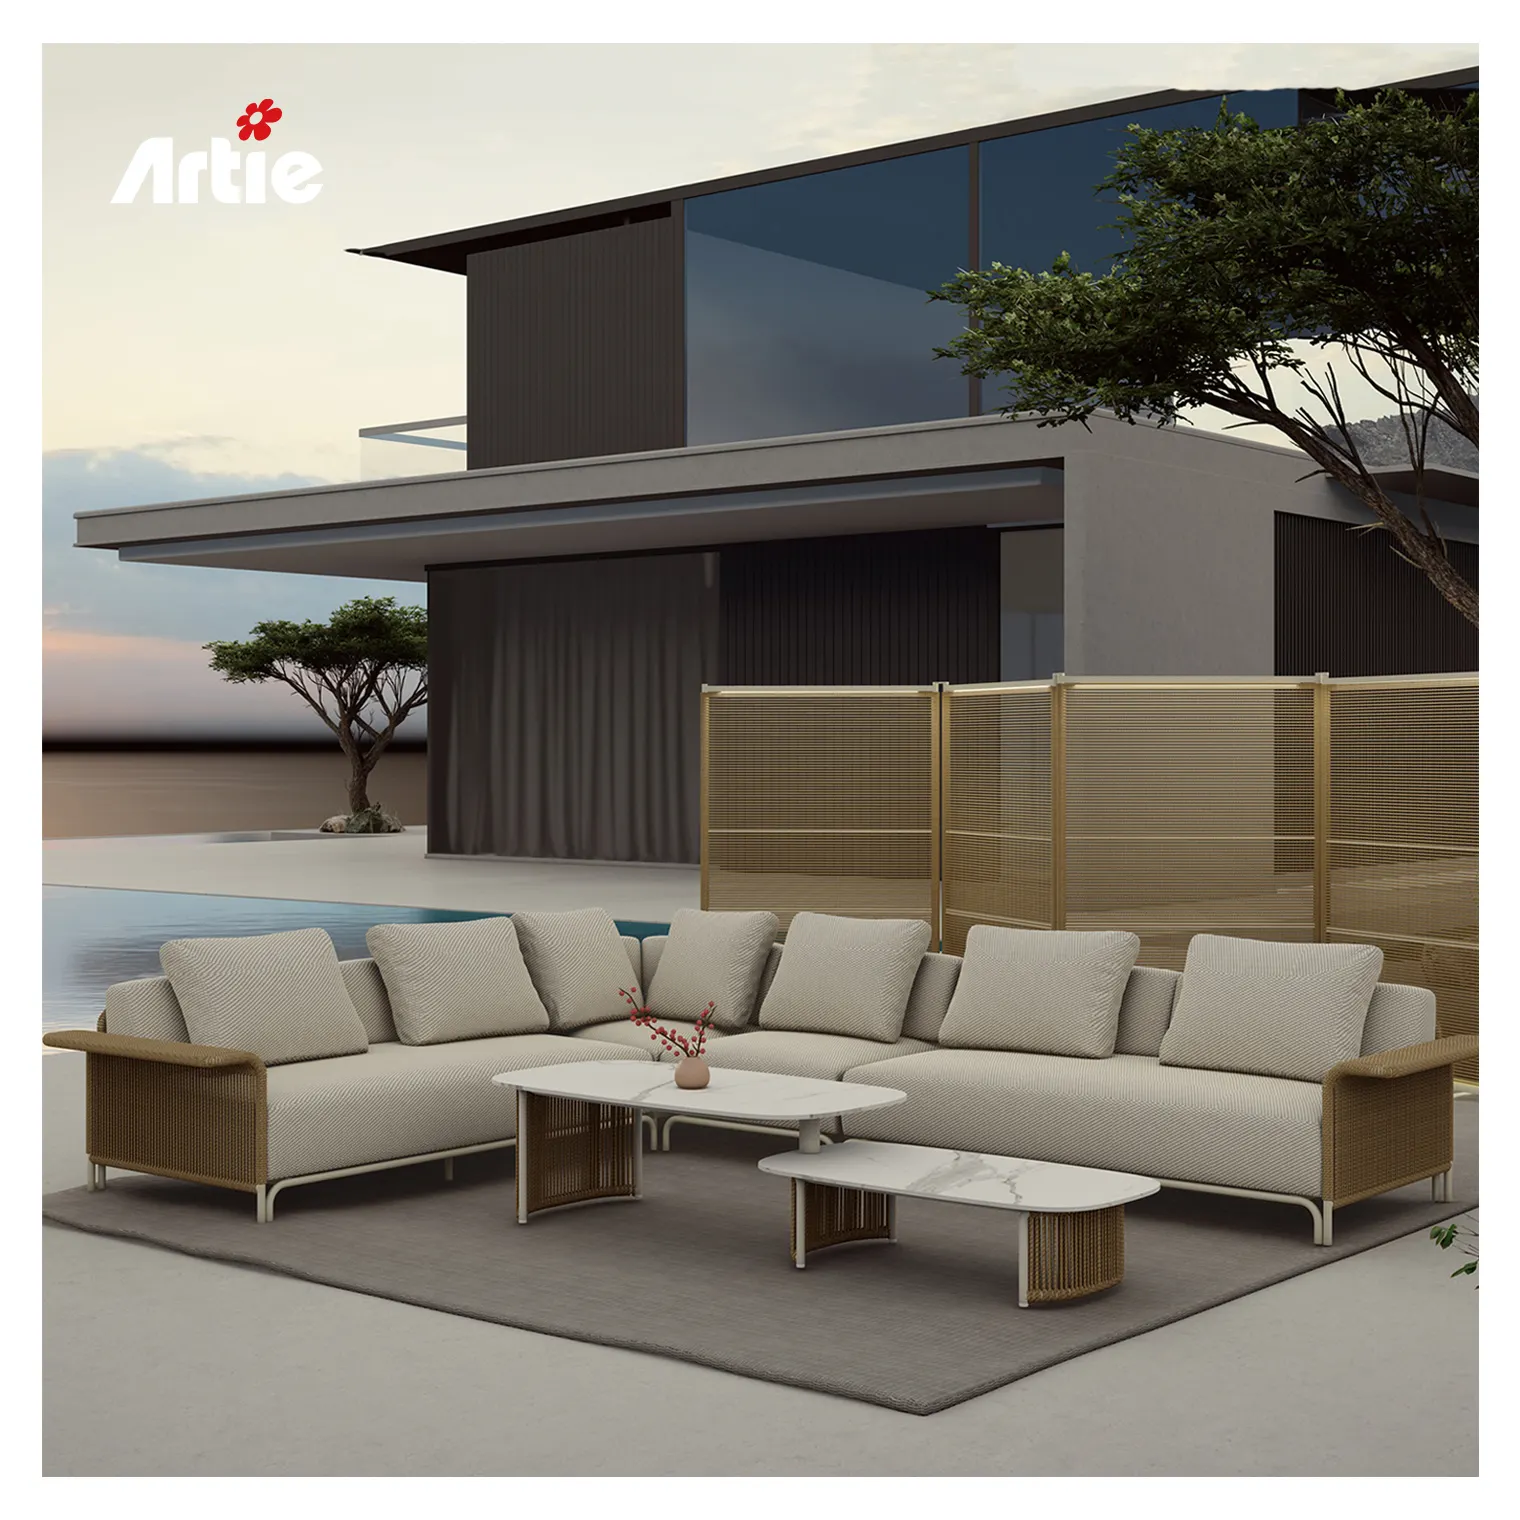 Artie Muebles de hotel de alta gama Sofá seccional al aire libre Muebles de mimbre para todo clima Juegos de sofás de jardín en forma de L